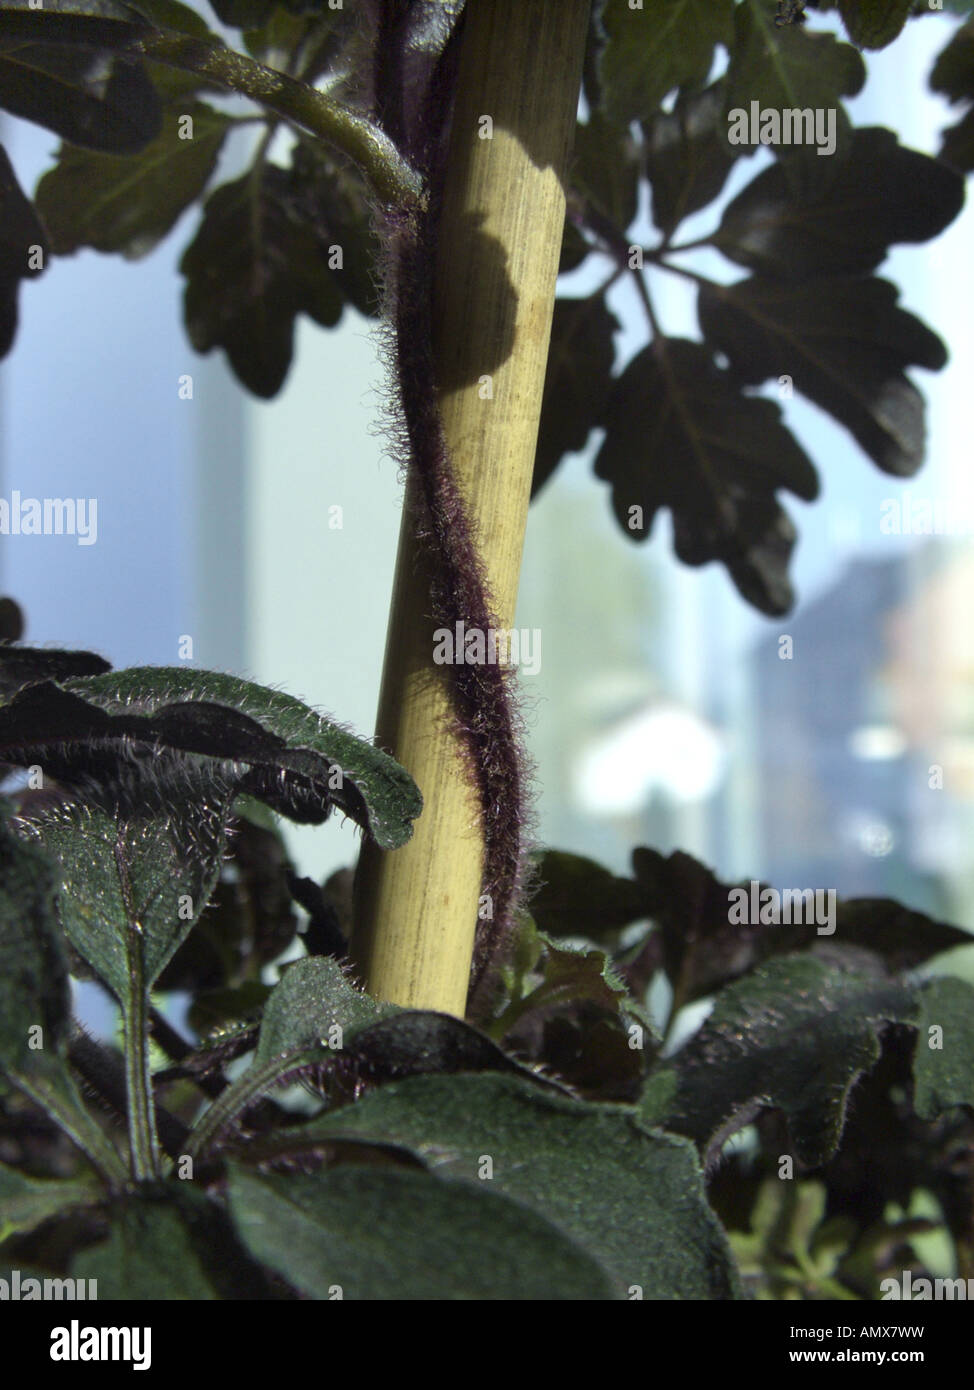 Mikania (Mikania ternata), potted plnnt, twining sprout Stock Photo